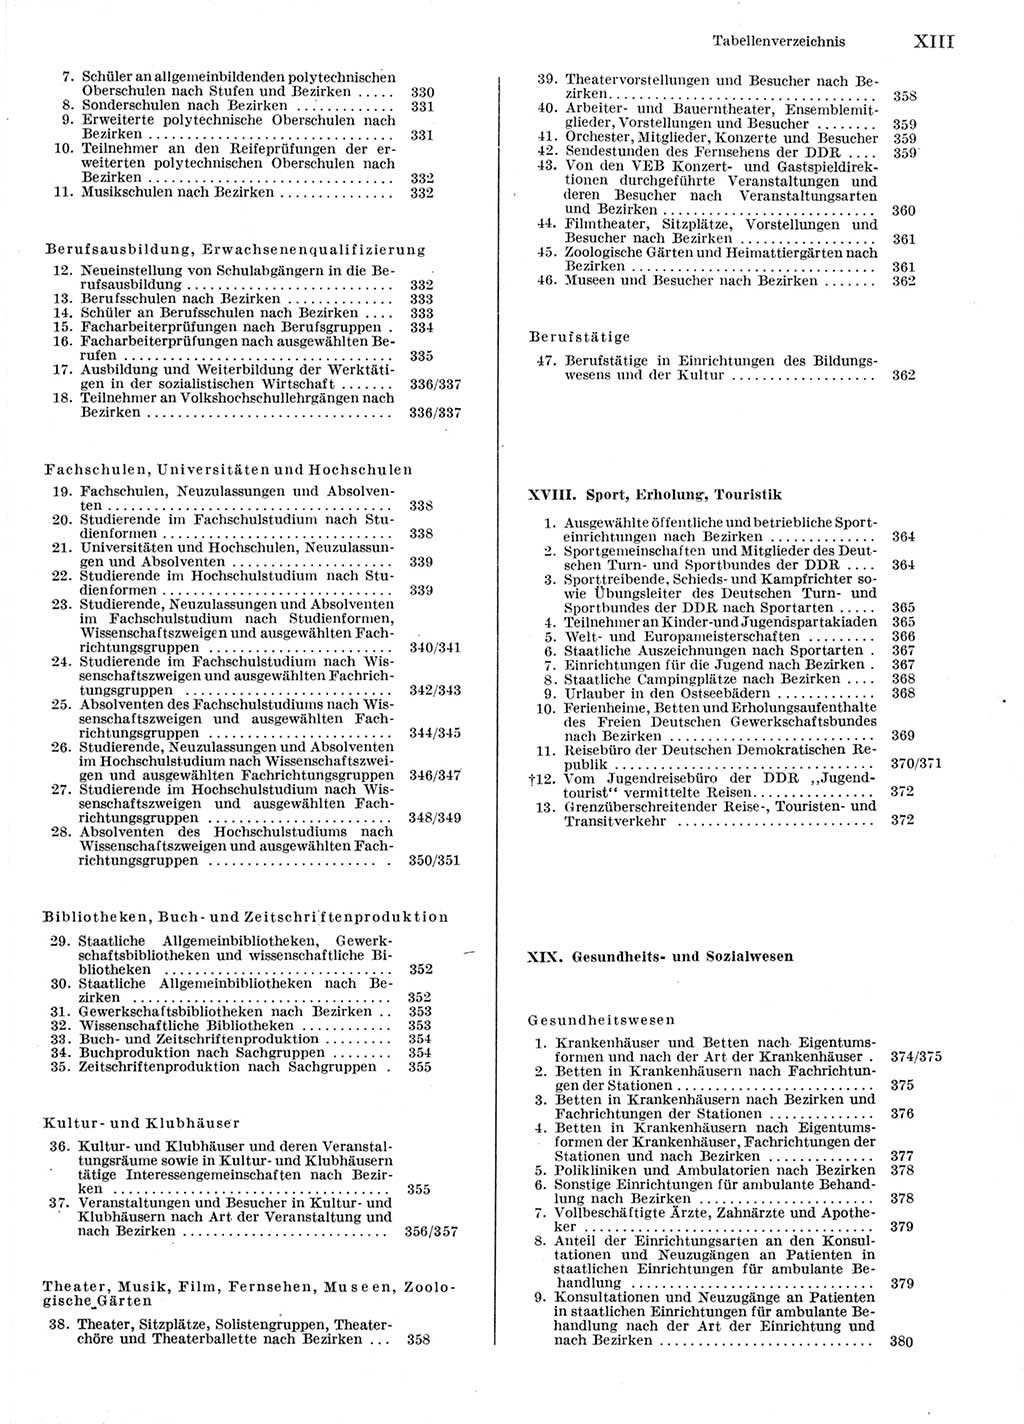 Statistisches Jahrbuch der Deutschen Demokratischen Republik (DDR) 1976, Seite 13 (Stat. Jb. DDR 1976, S. 13)